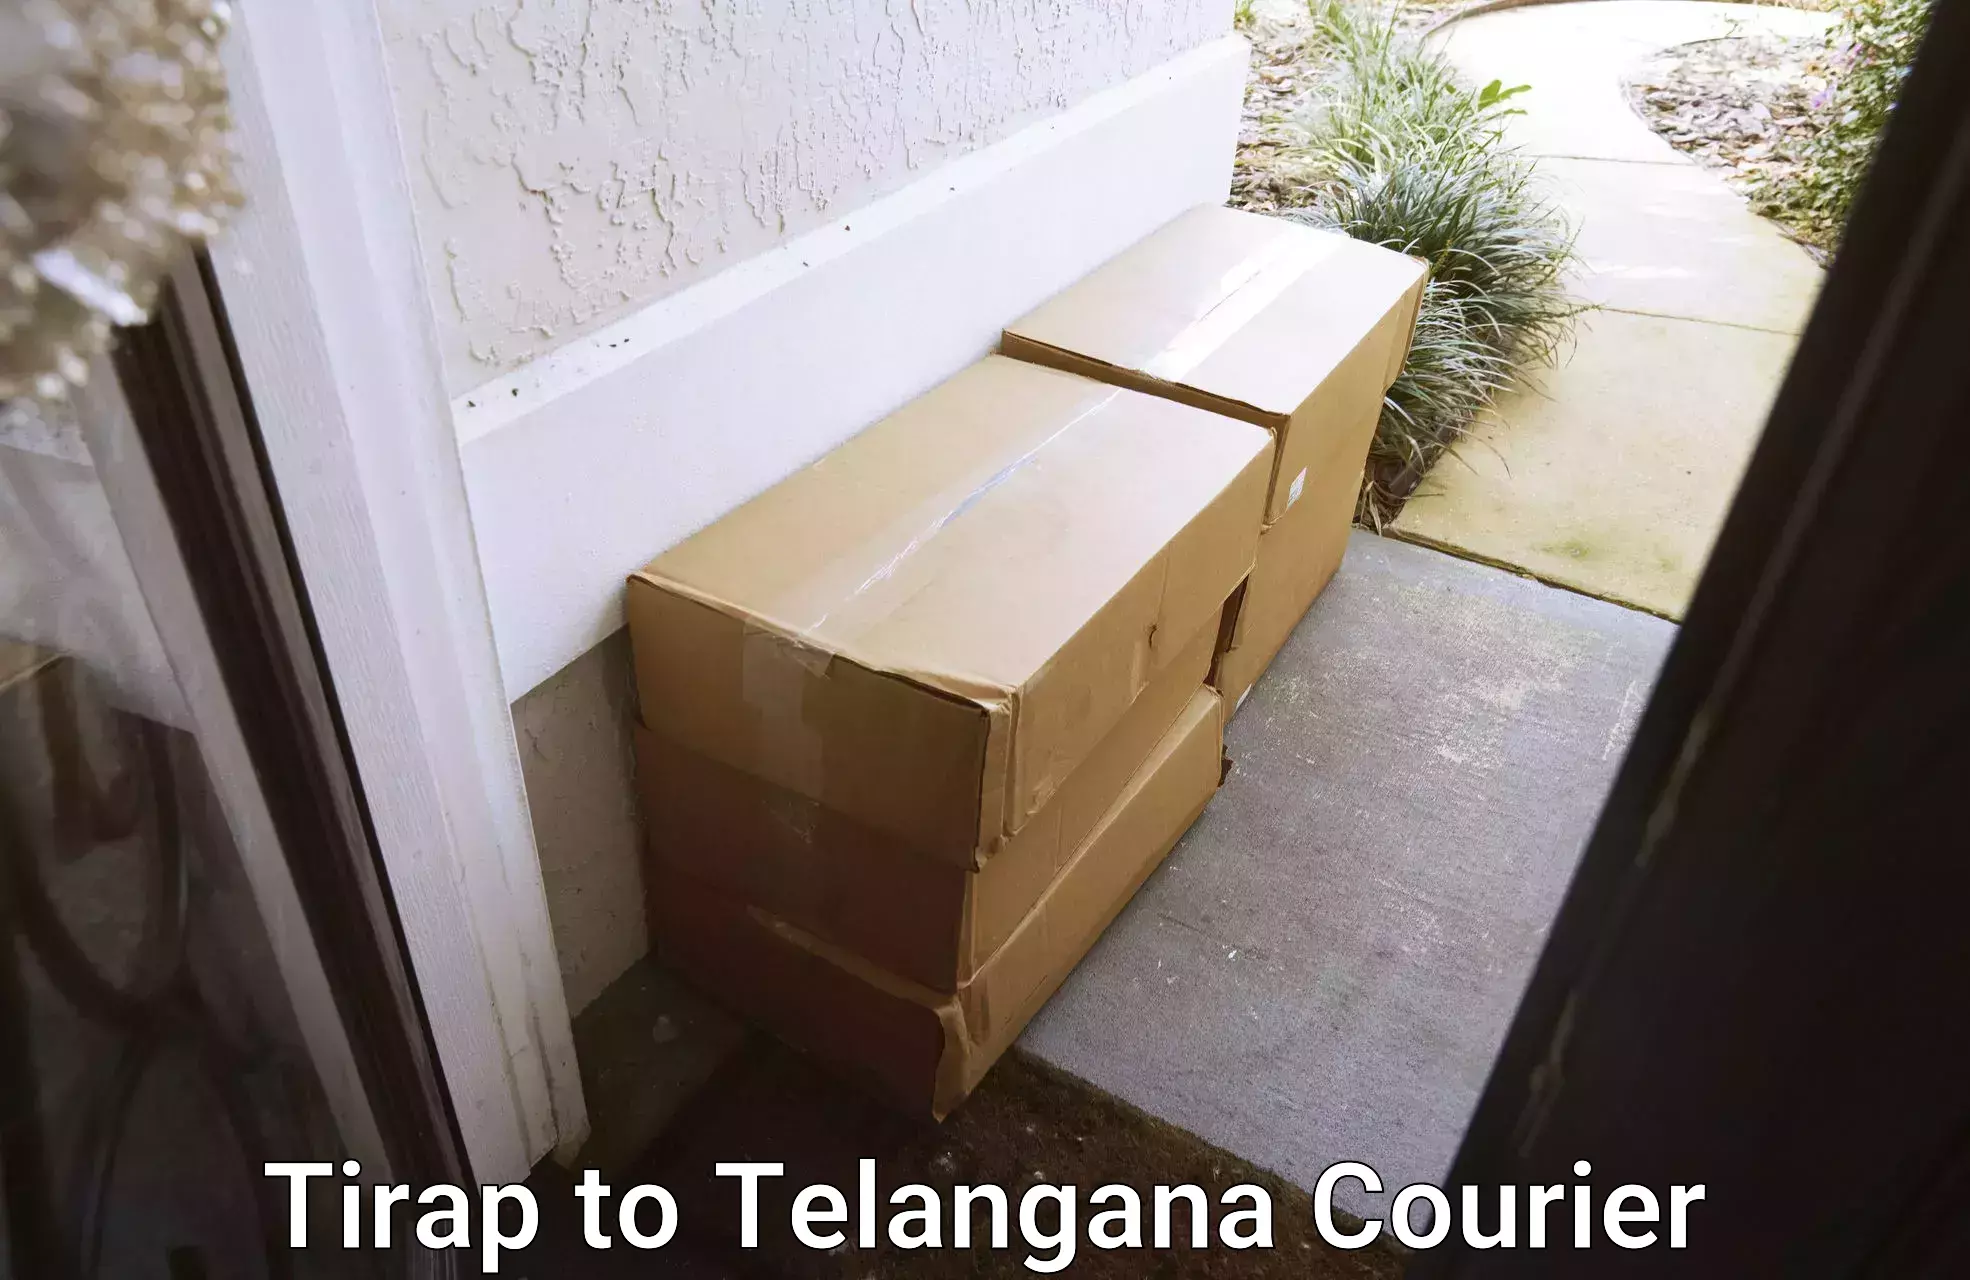 Urgent courier needs Tirap to Telangana